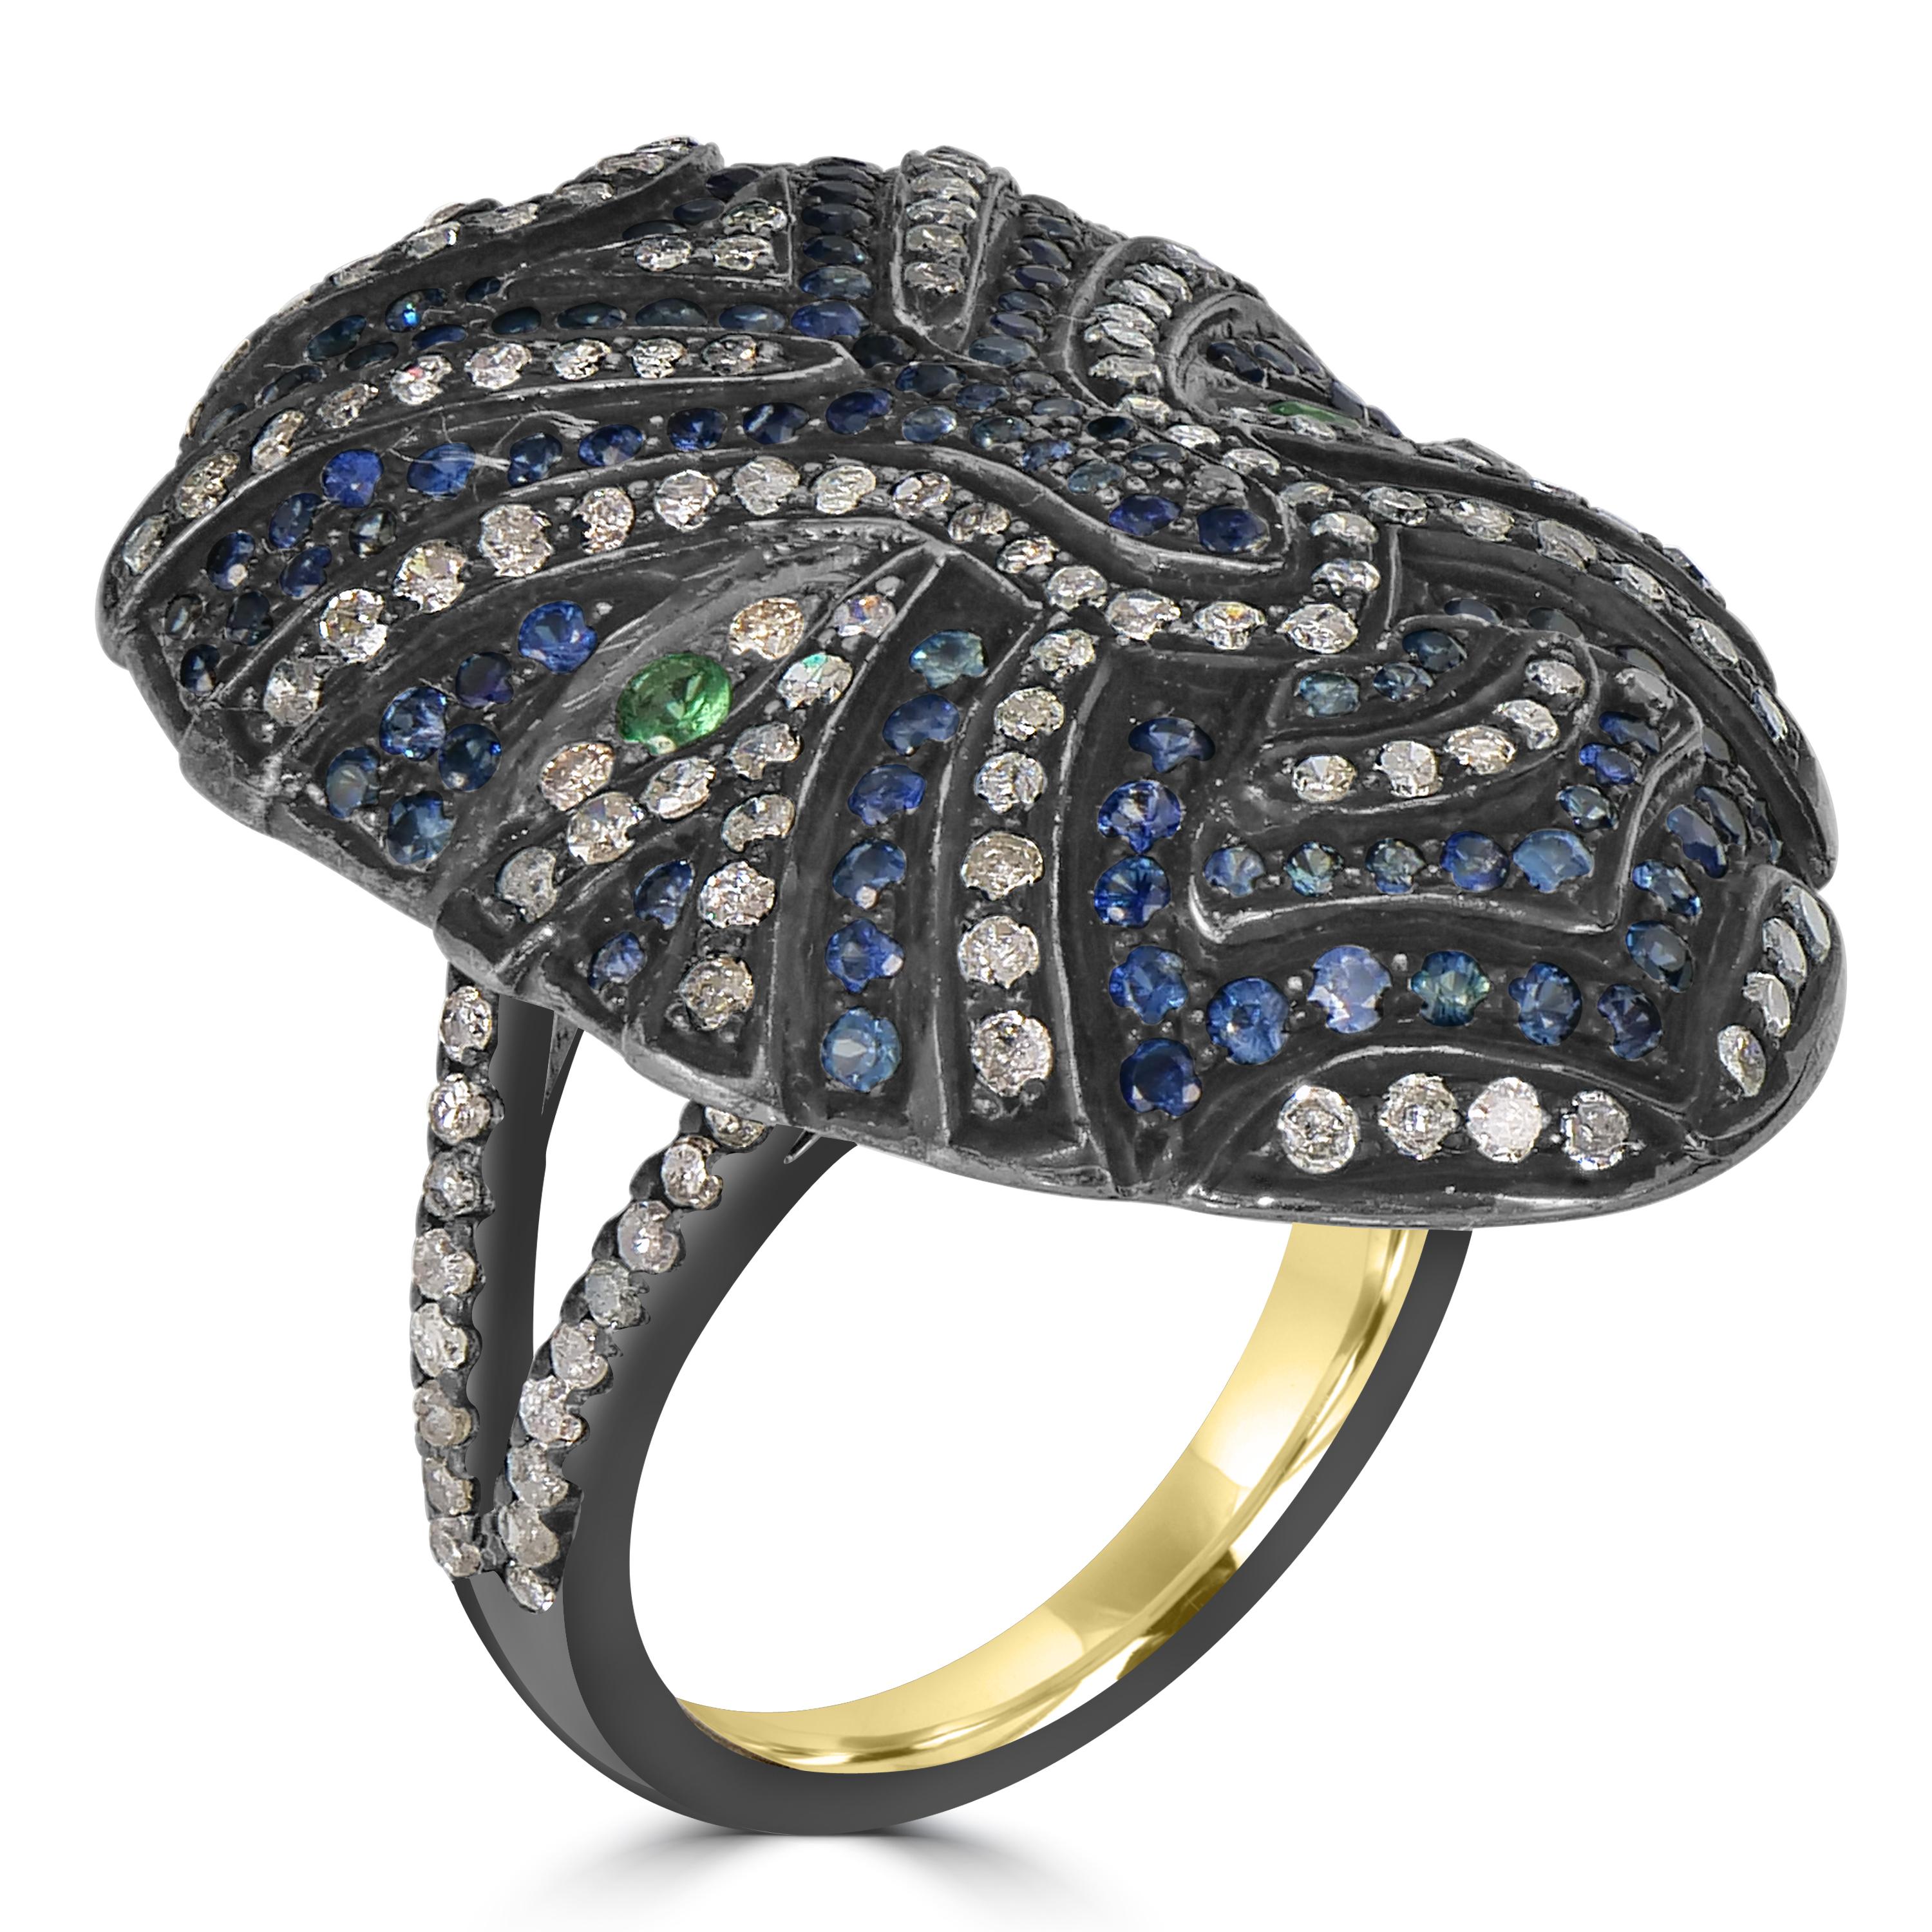 Tauchen Sie ein in die Mystik des viktorianischen 3,3 Cttw. Ring mit blauen Saphiren, Tsavoriten und Diamanten für die Vollmaske - eine faszinierende Verschmelzung von avantgardistischem Design und opulenten Edelsteinen. Der Ringkopf aus